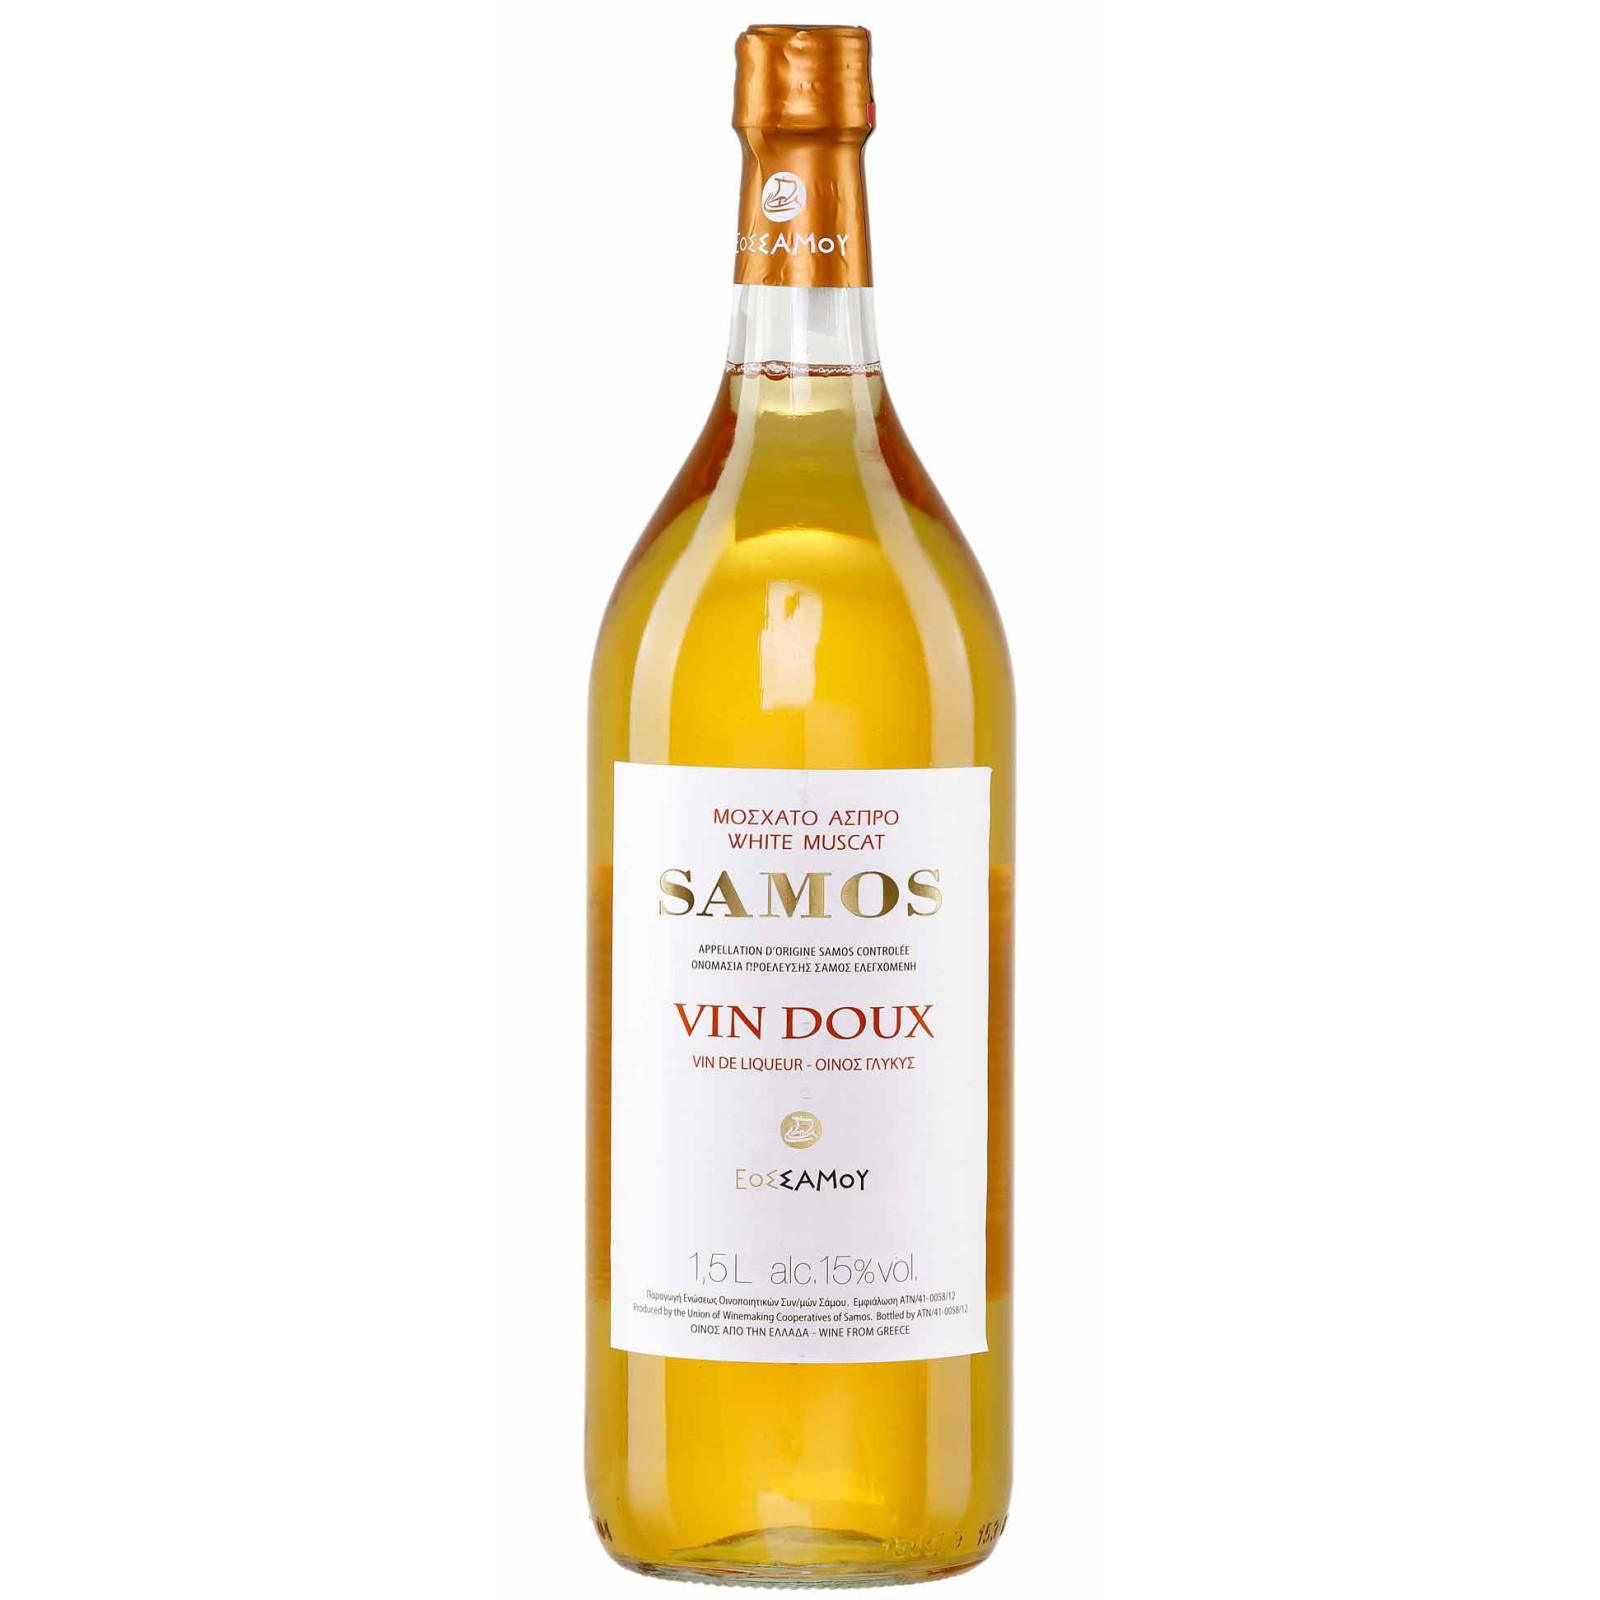 15,99 Jassas bei € 1,5l Doux Samos Vin Wein kaufen,